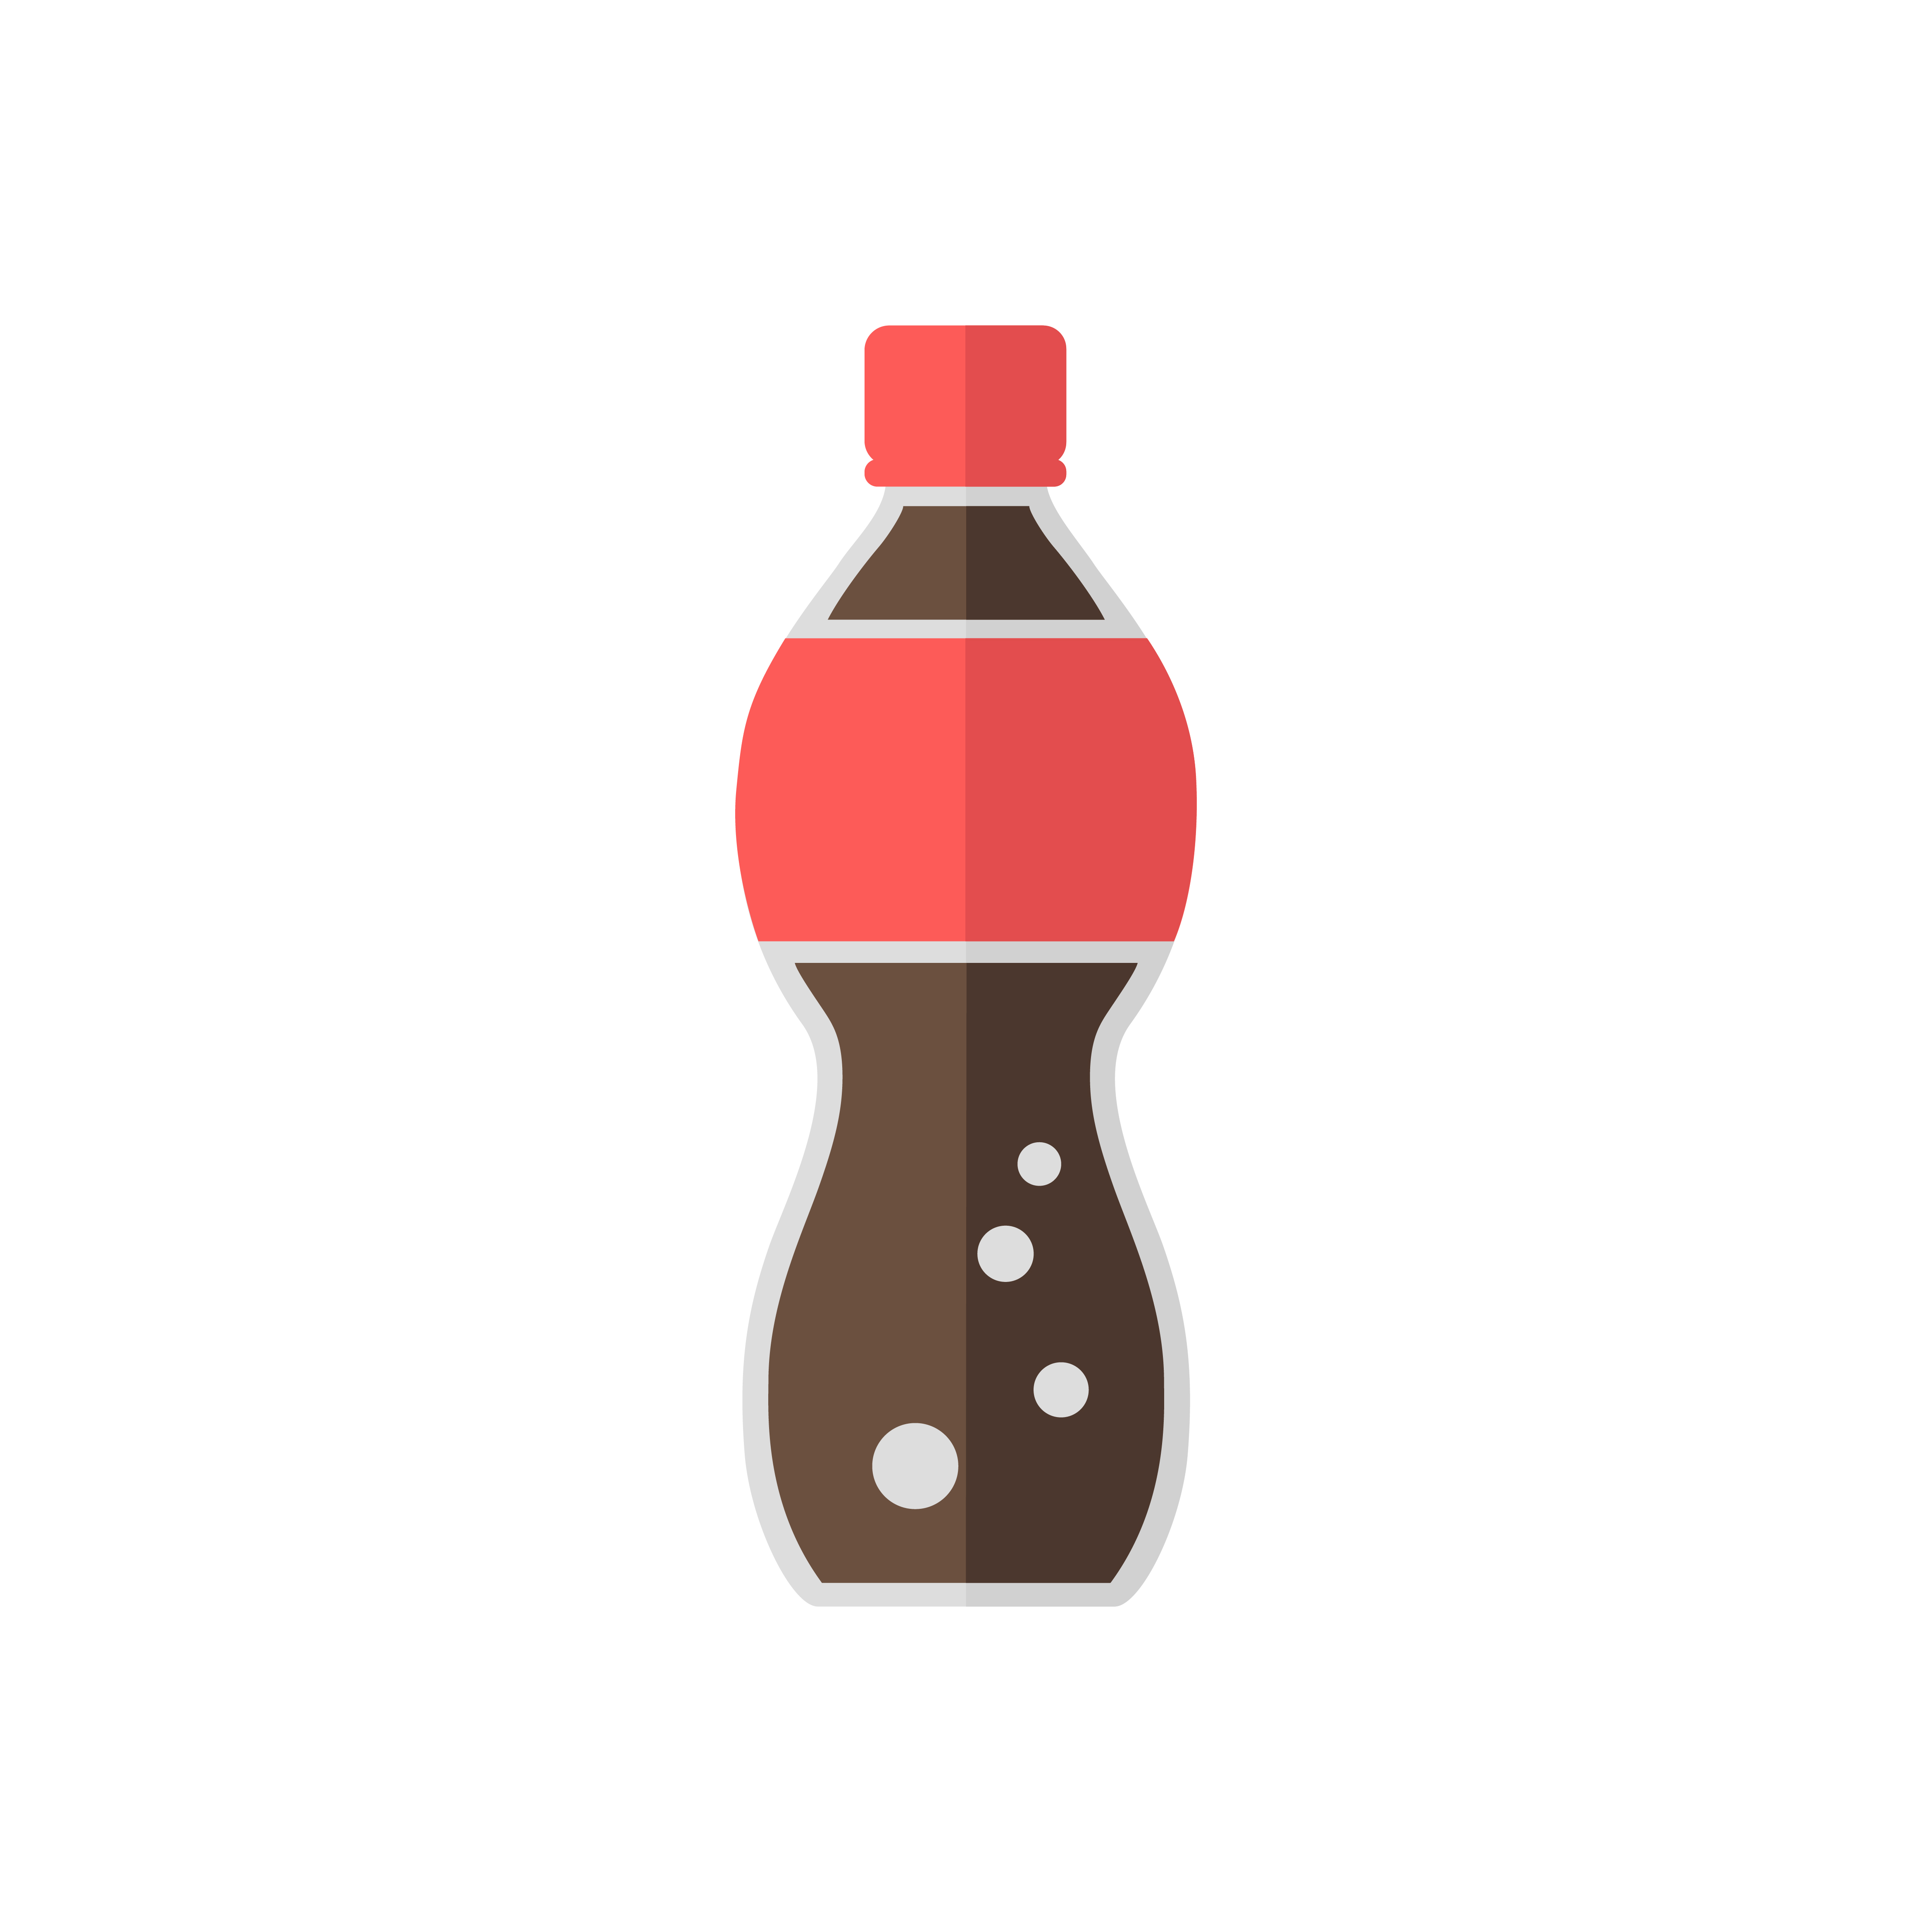 Soda bottle vector - Download Free Vectors, Clipart Graphics & Vector Art